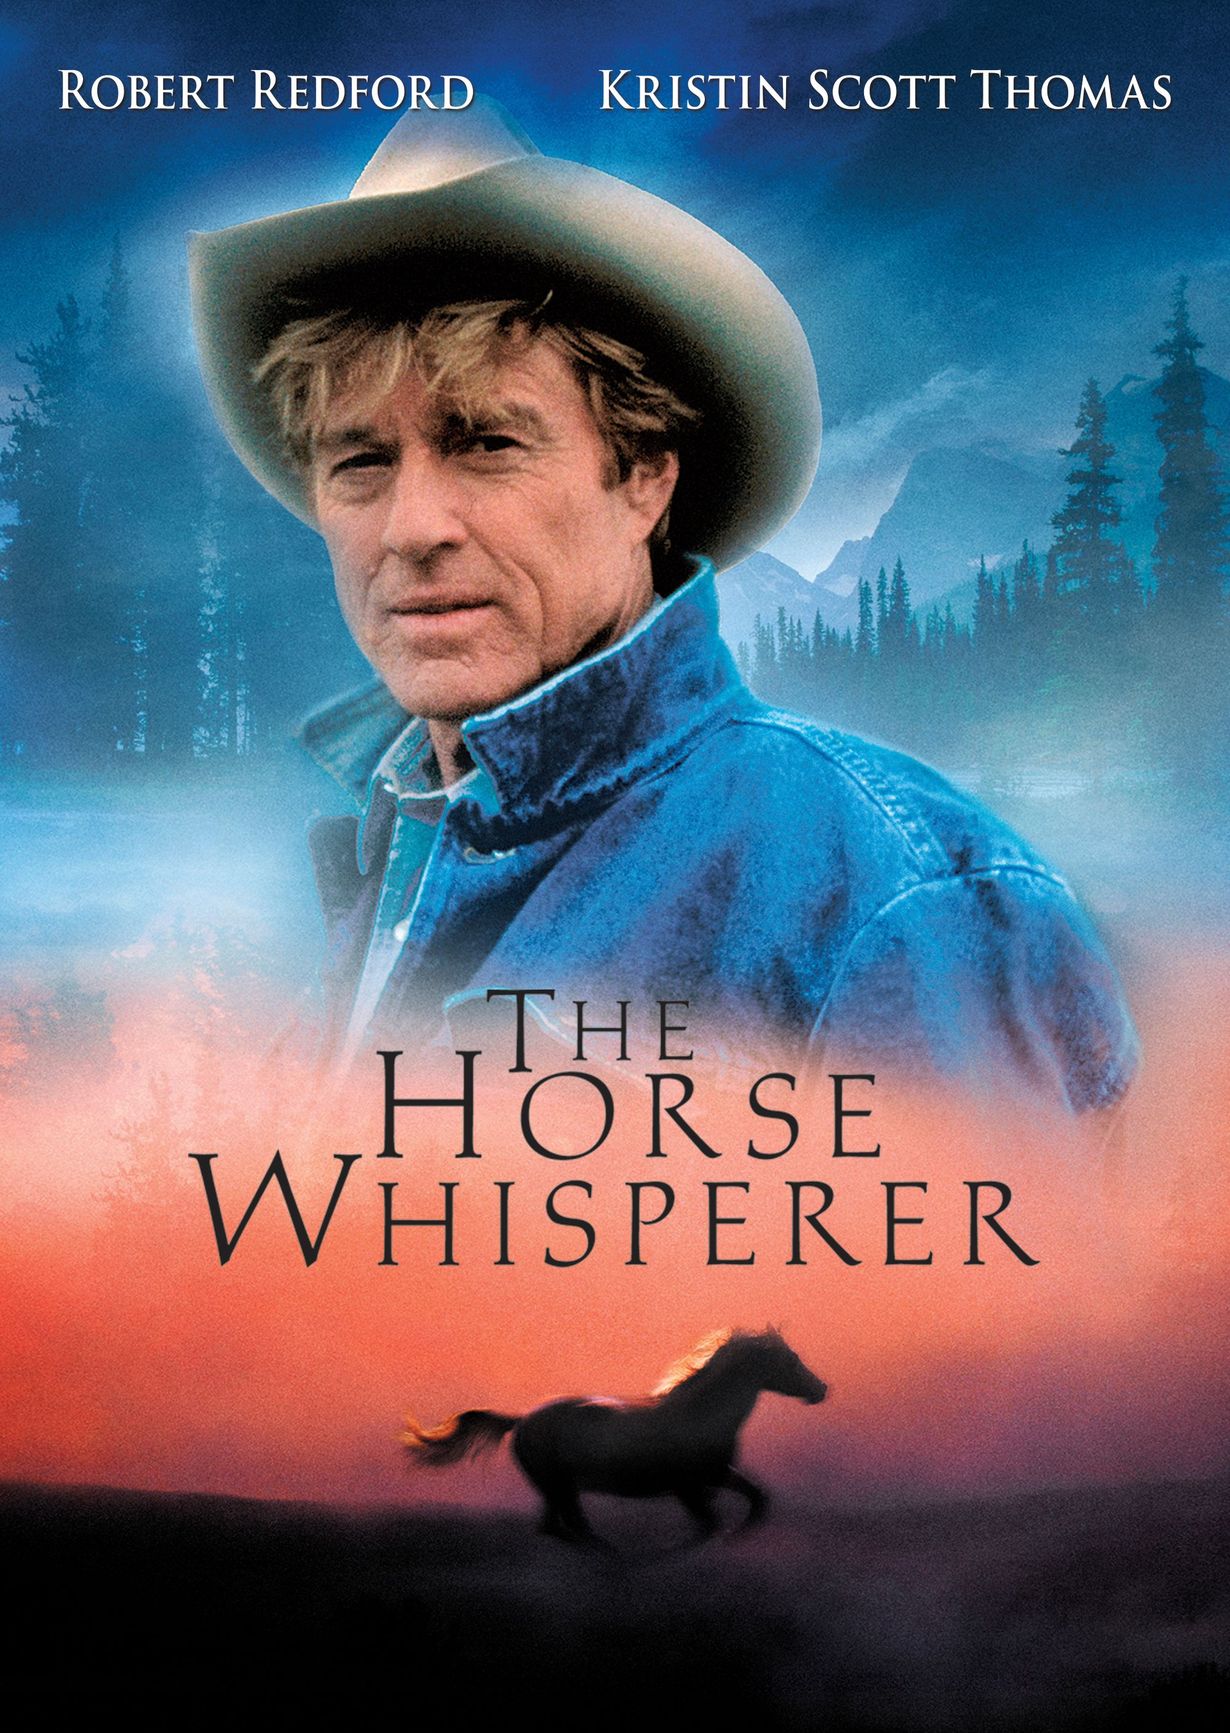 Horse whisperer photo